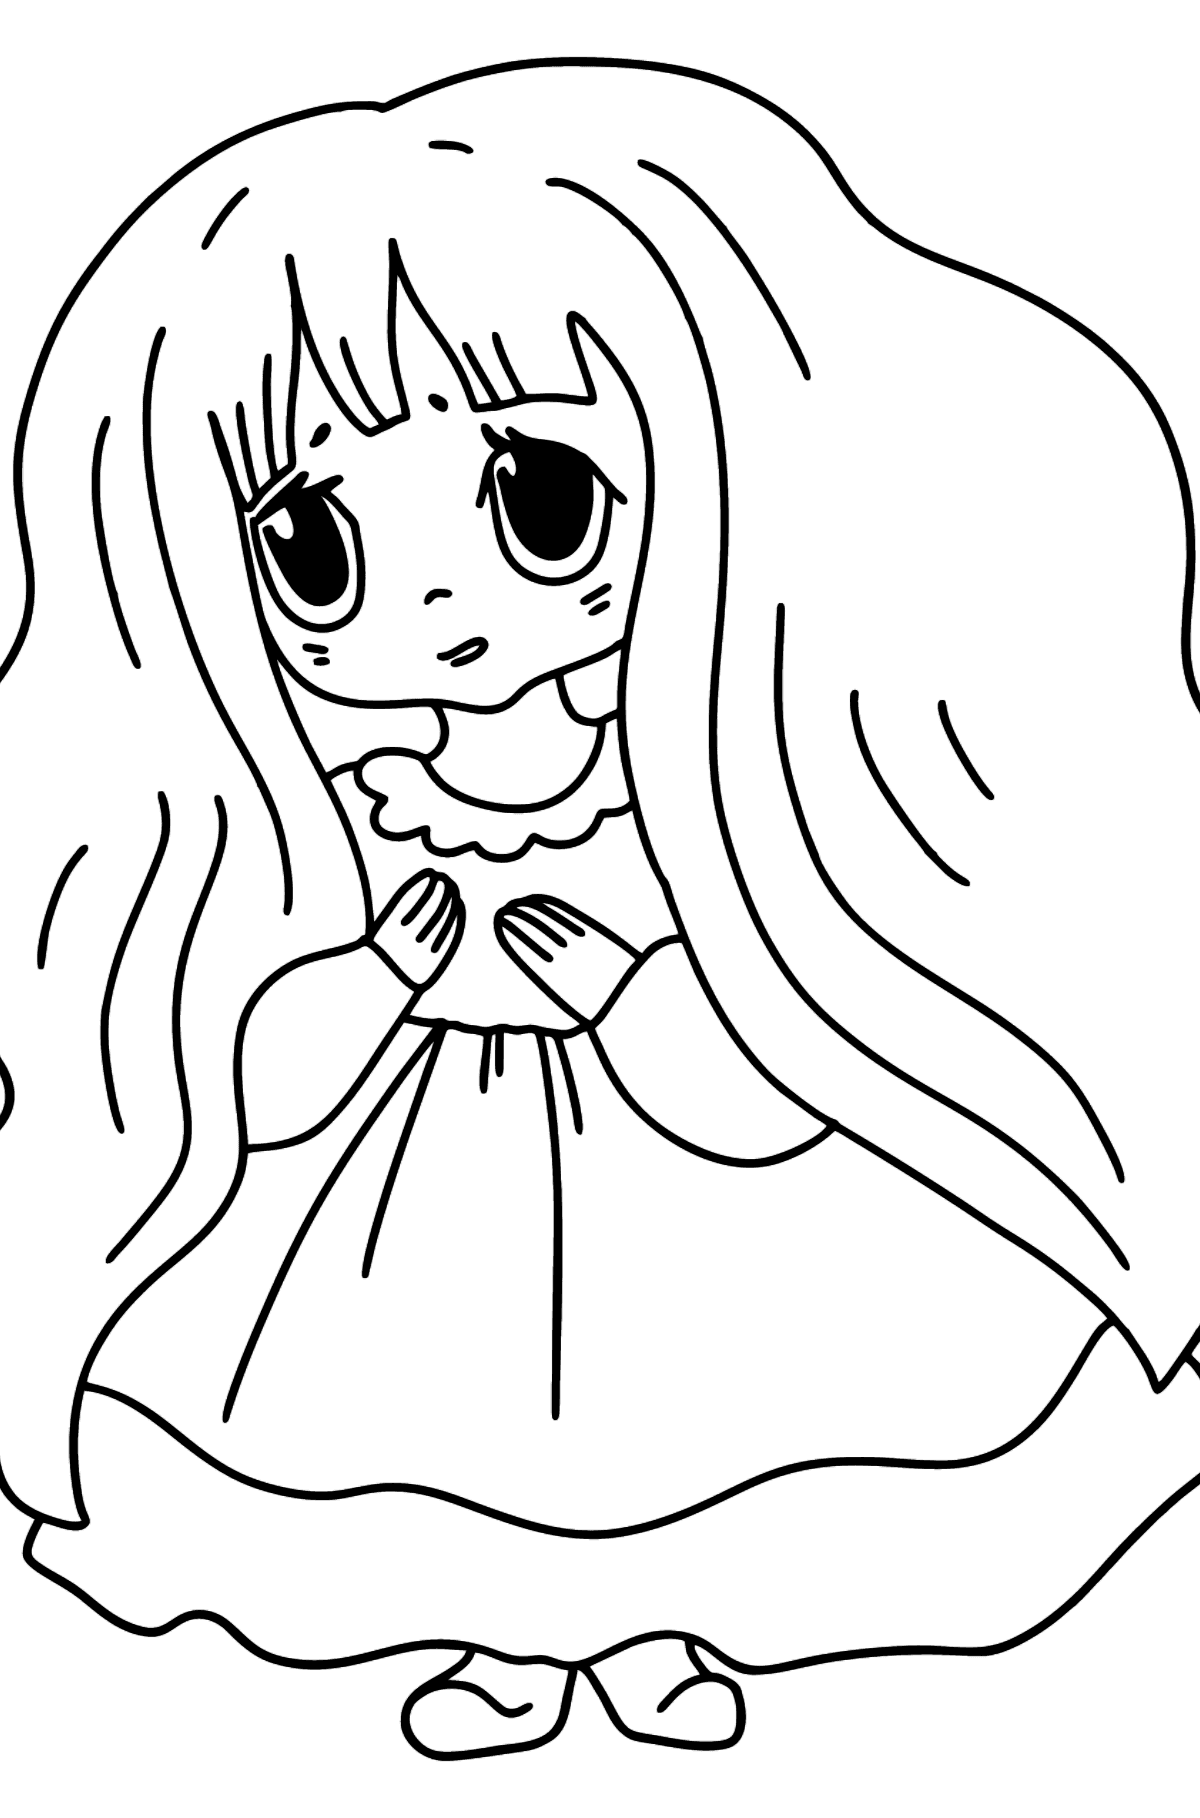 Anime üzgün kız boyama sayfası - Boyamalar çocuklar için